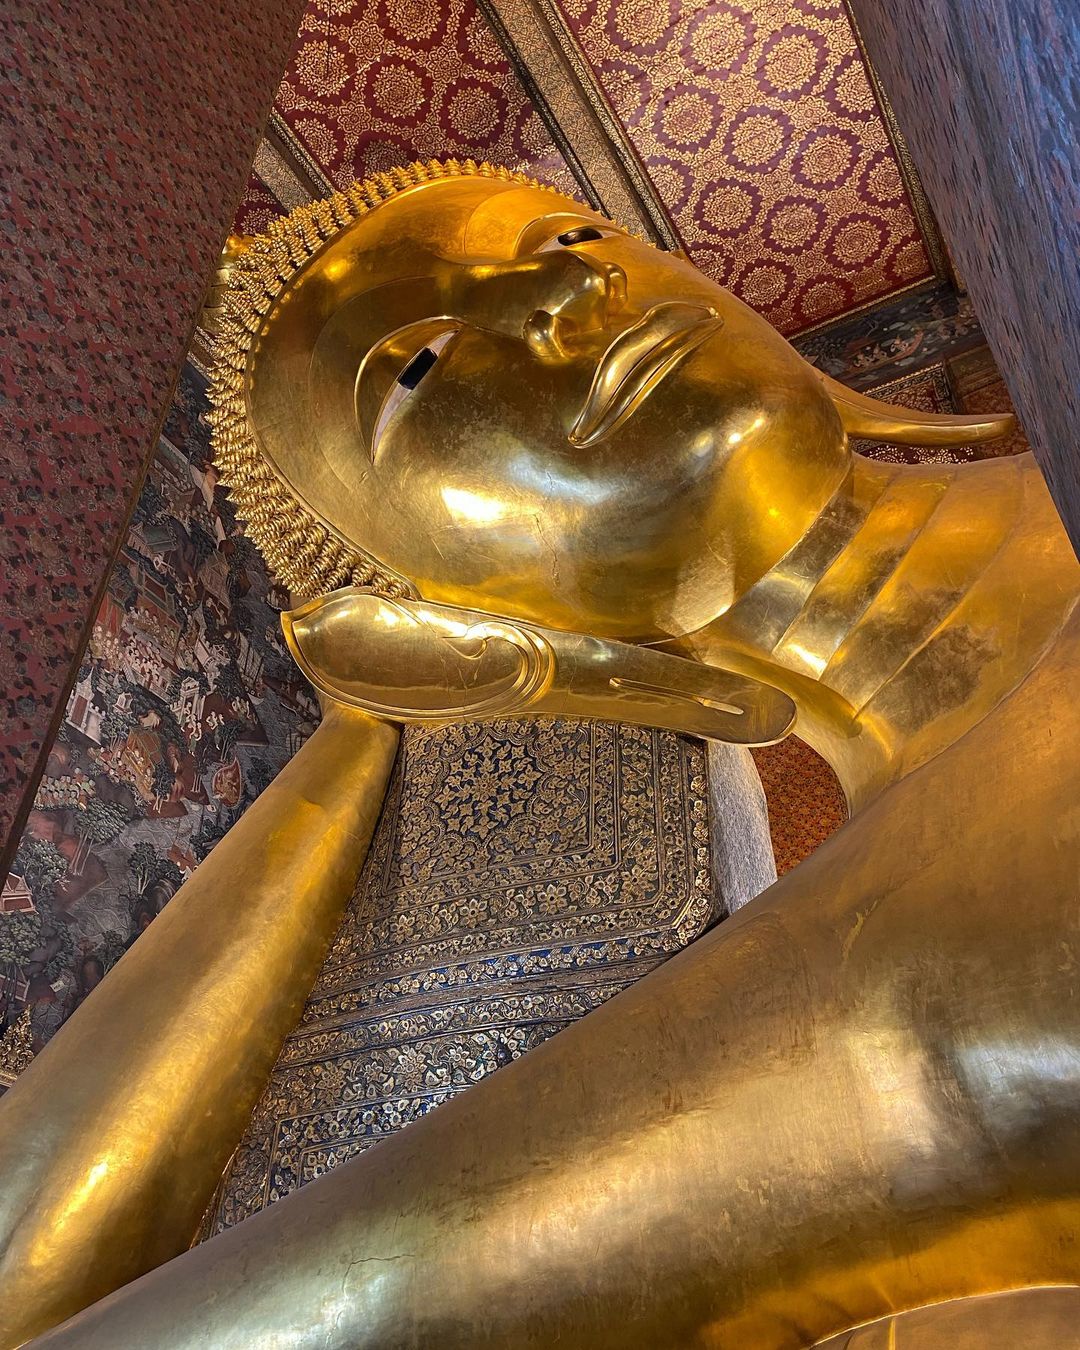 Things to do in Bangkok - Wat Pho